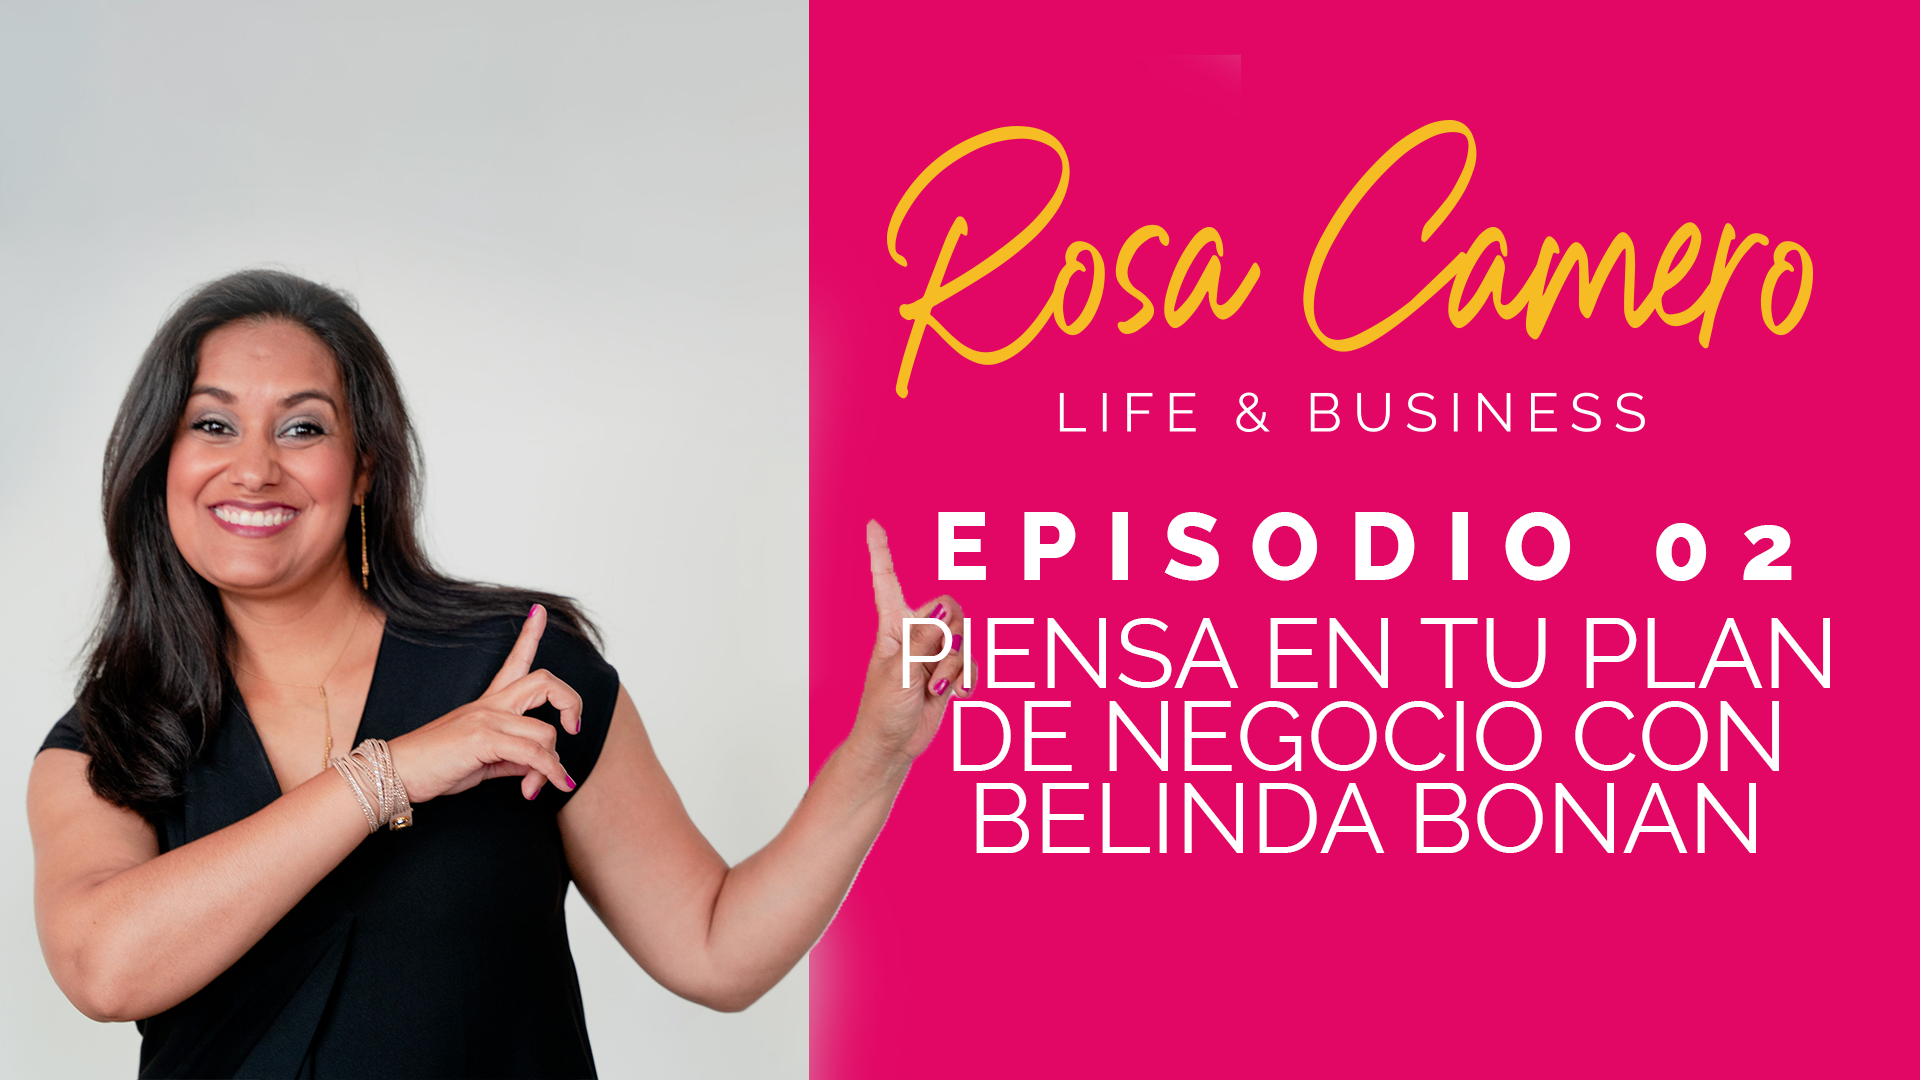 You are currently viewing Life & Business con Rosa Camero Episodio 02: Piensa en tu plan de negocio con Belinda Bonan